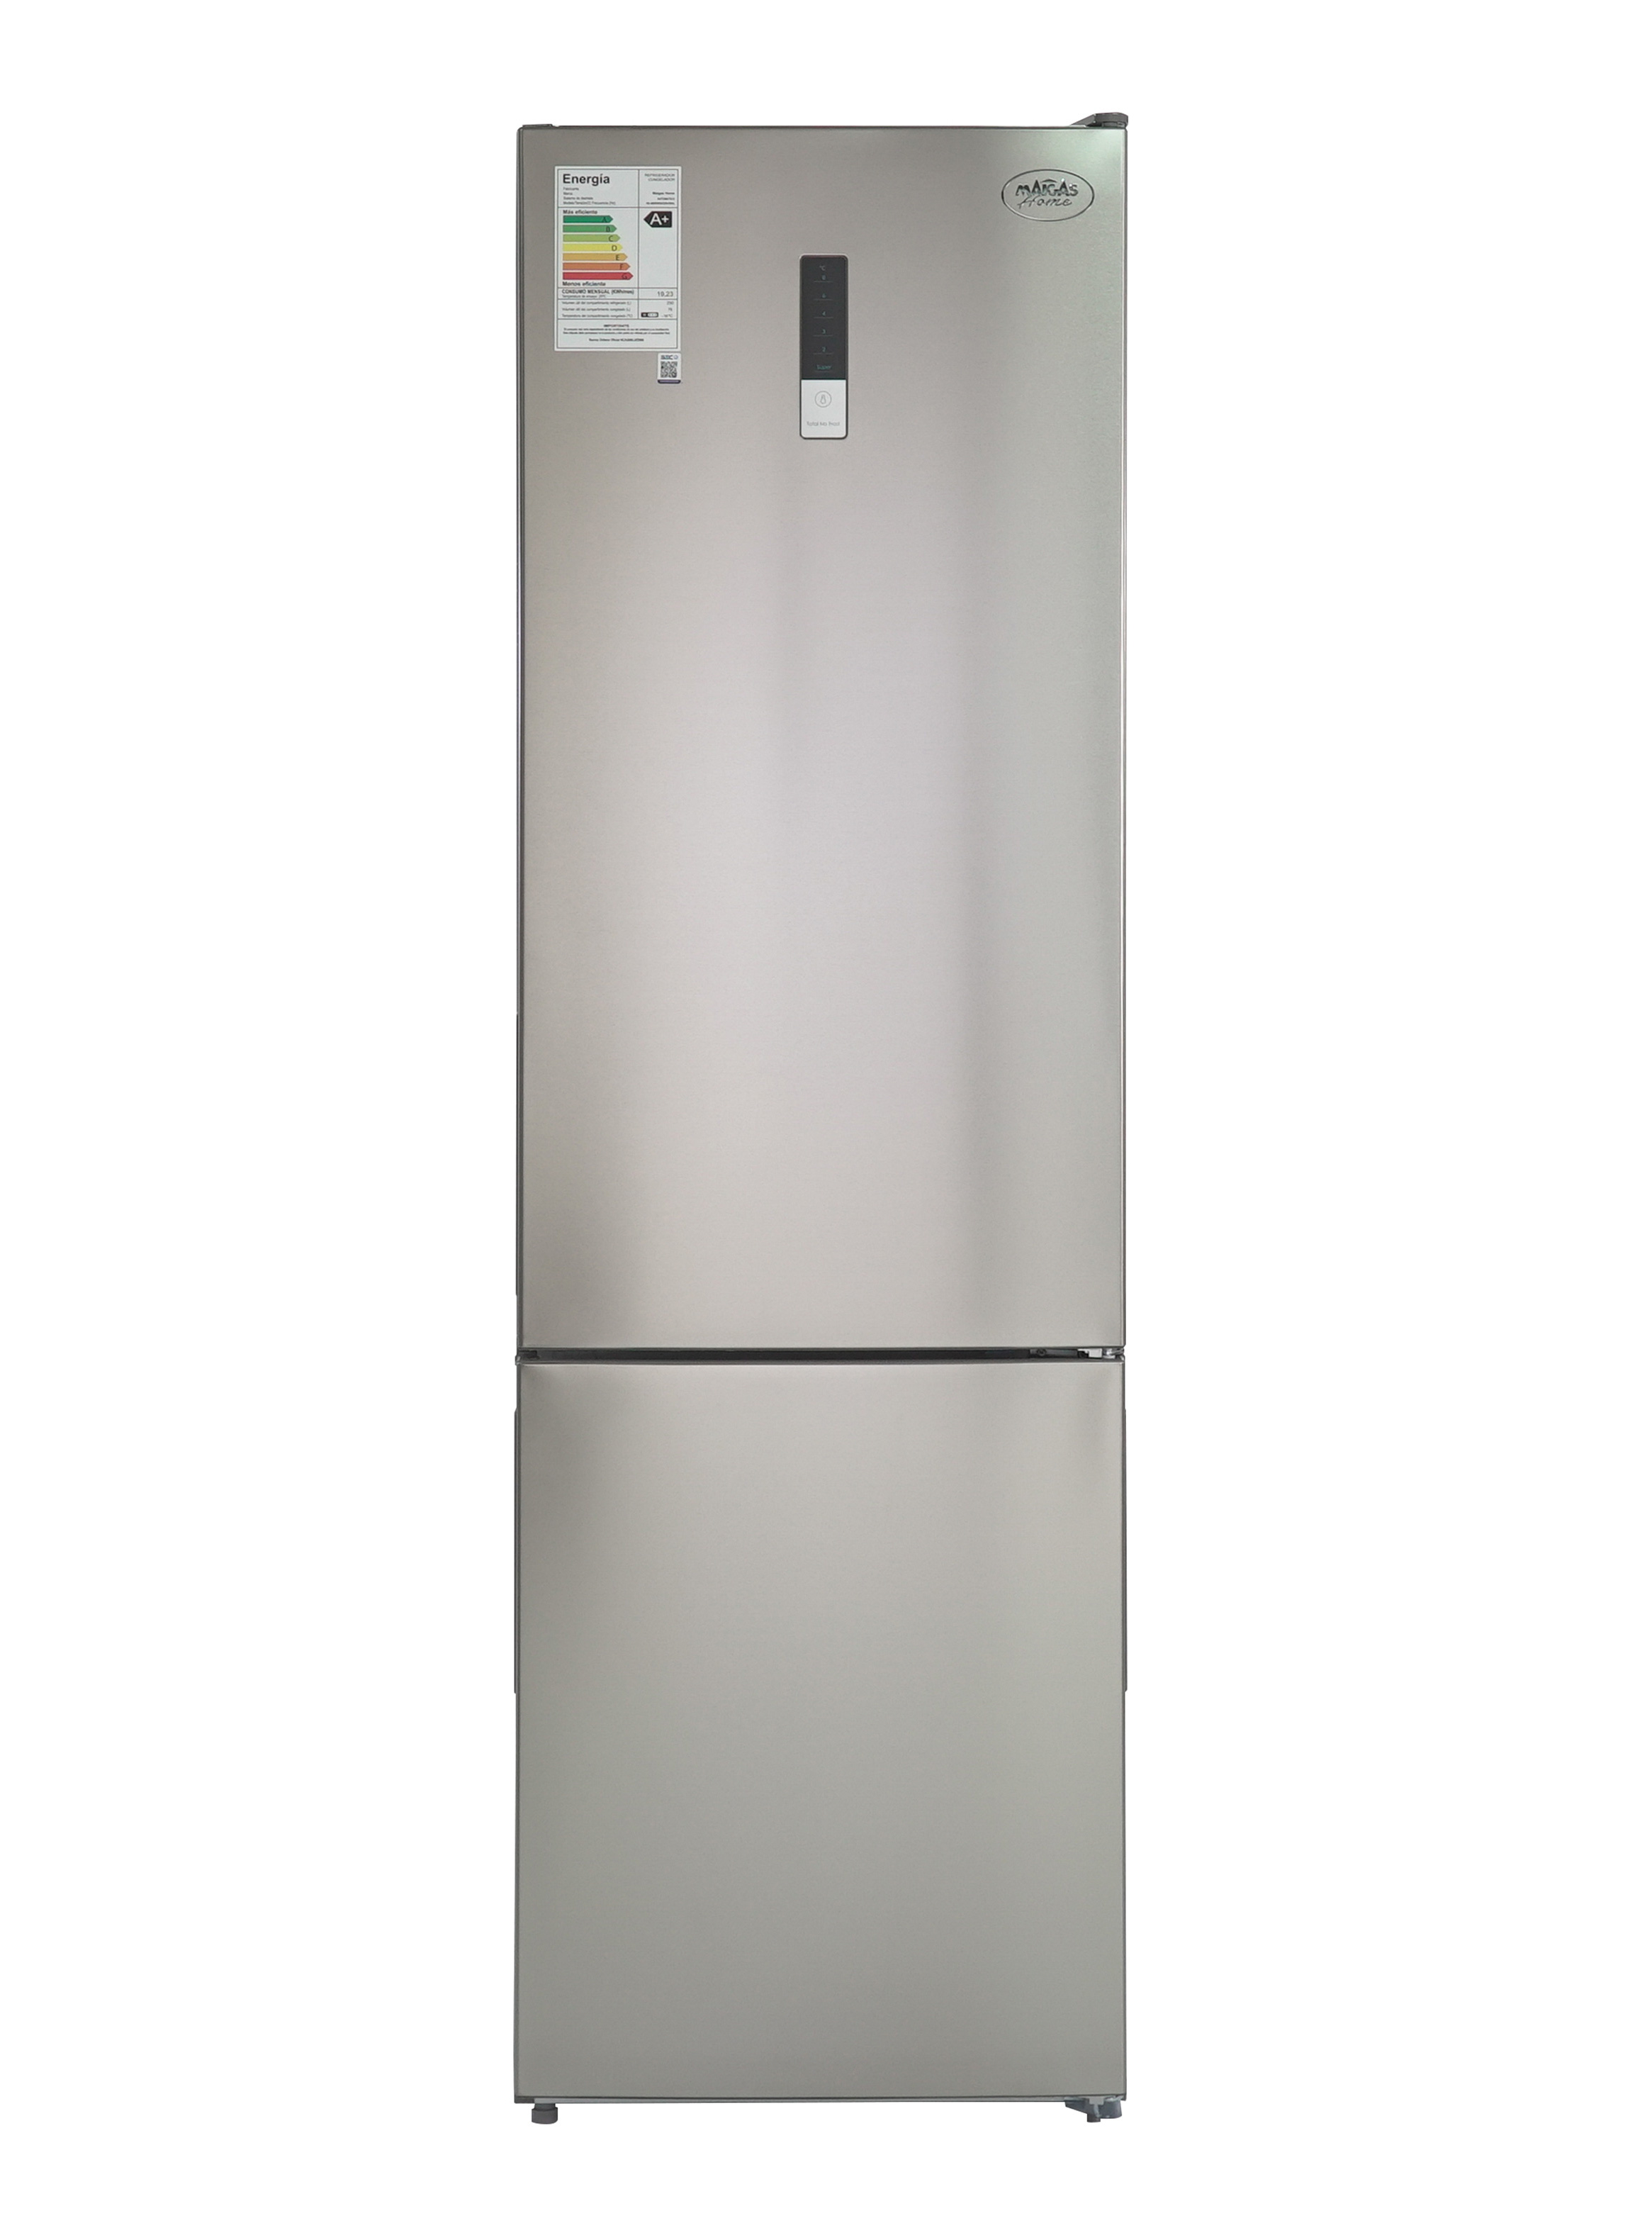 Congelador vertical 182 litros BD182G gris Maigas